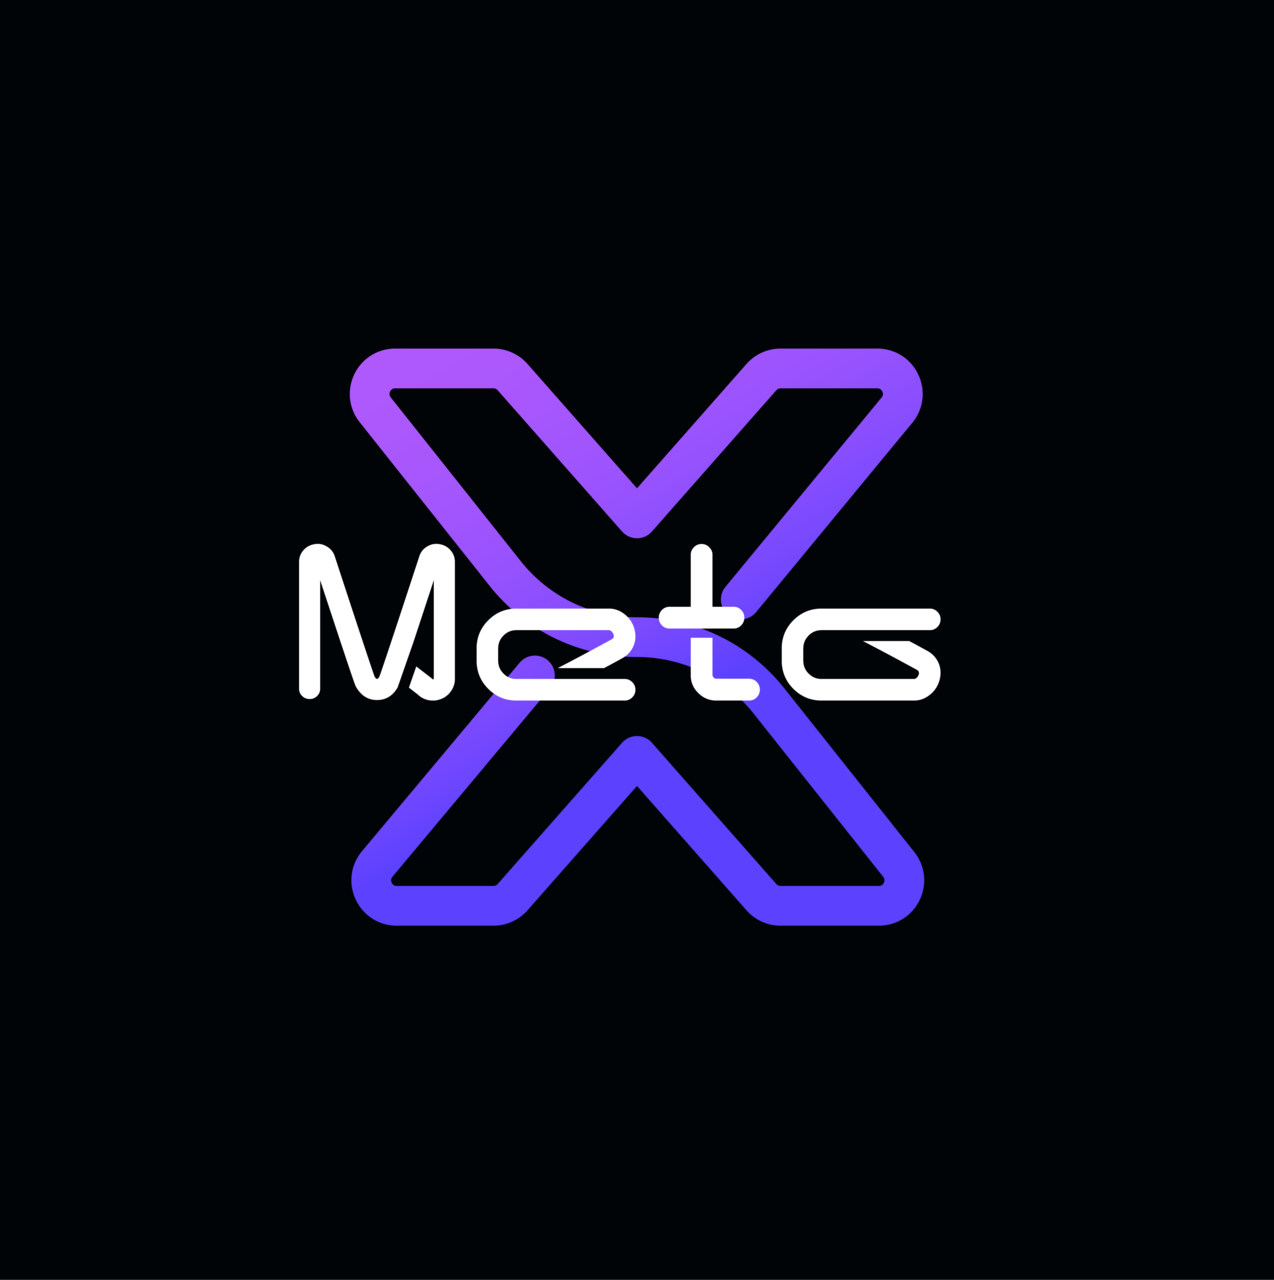 メタバース向け3Dアバターやスキン・NFTアイテムなどに特化した3Dクリエイティブ制作プラットフォーム「Meta X」がリリース